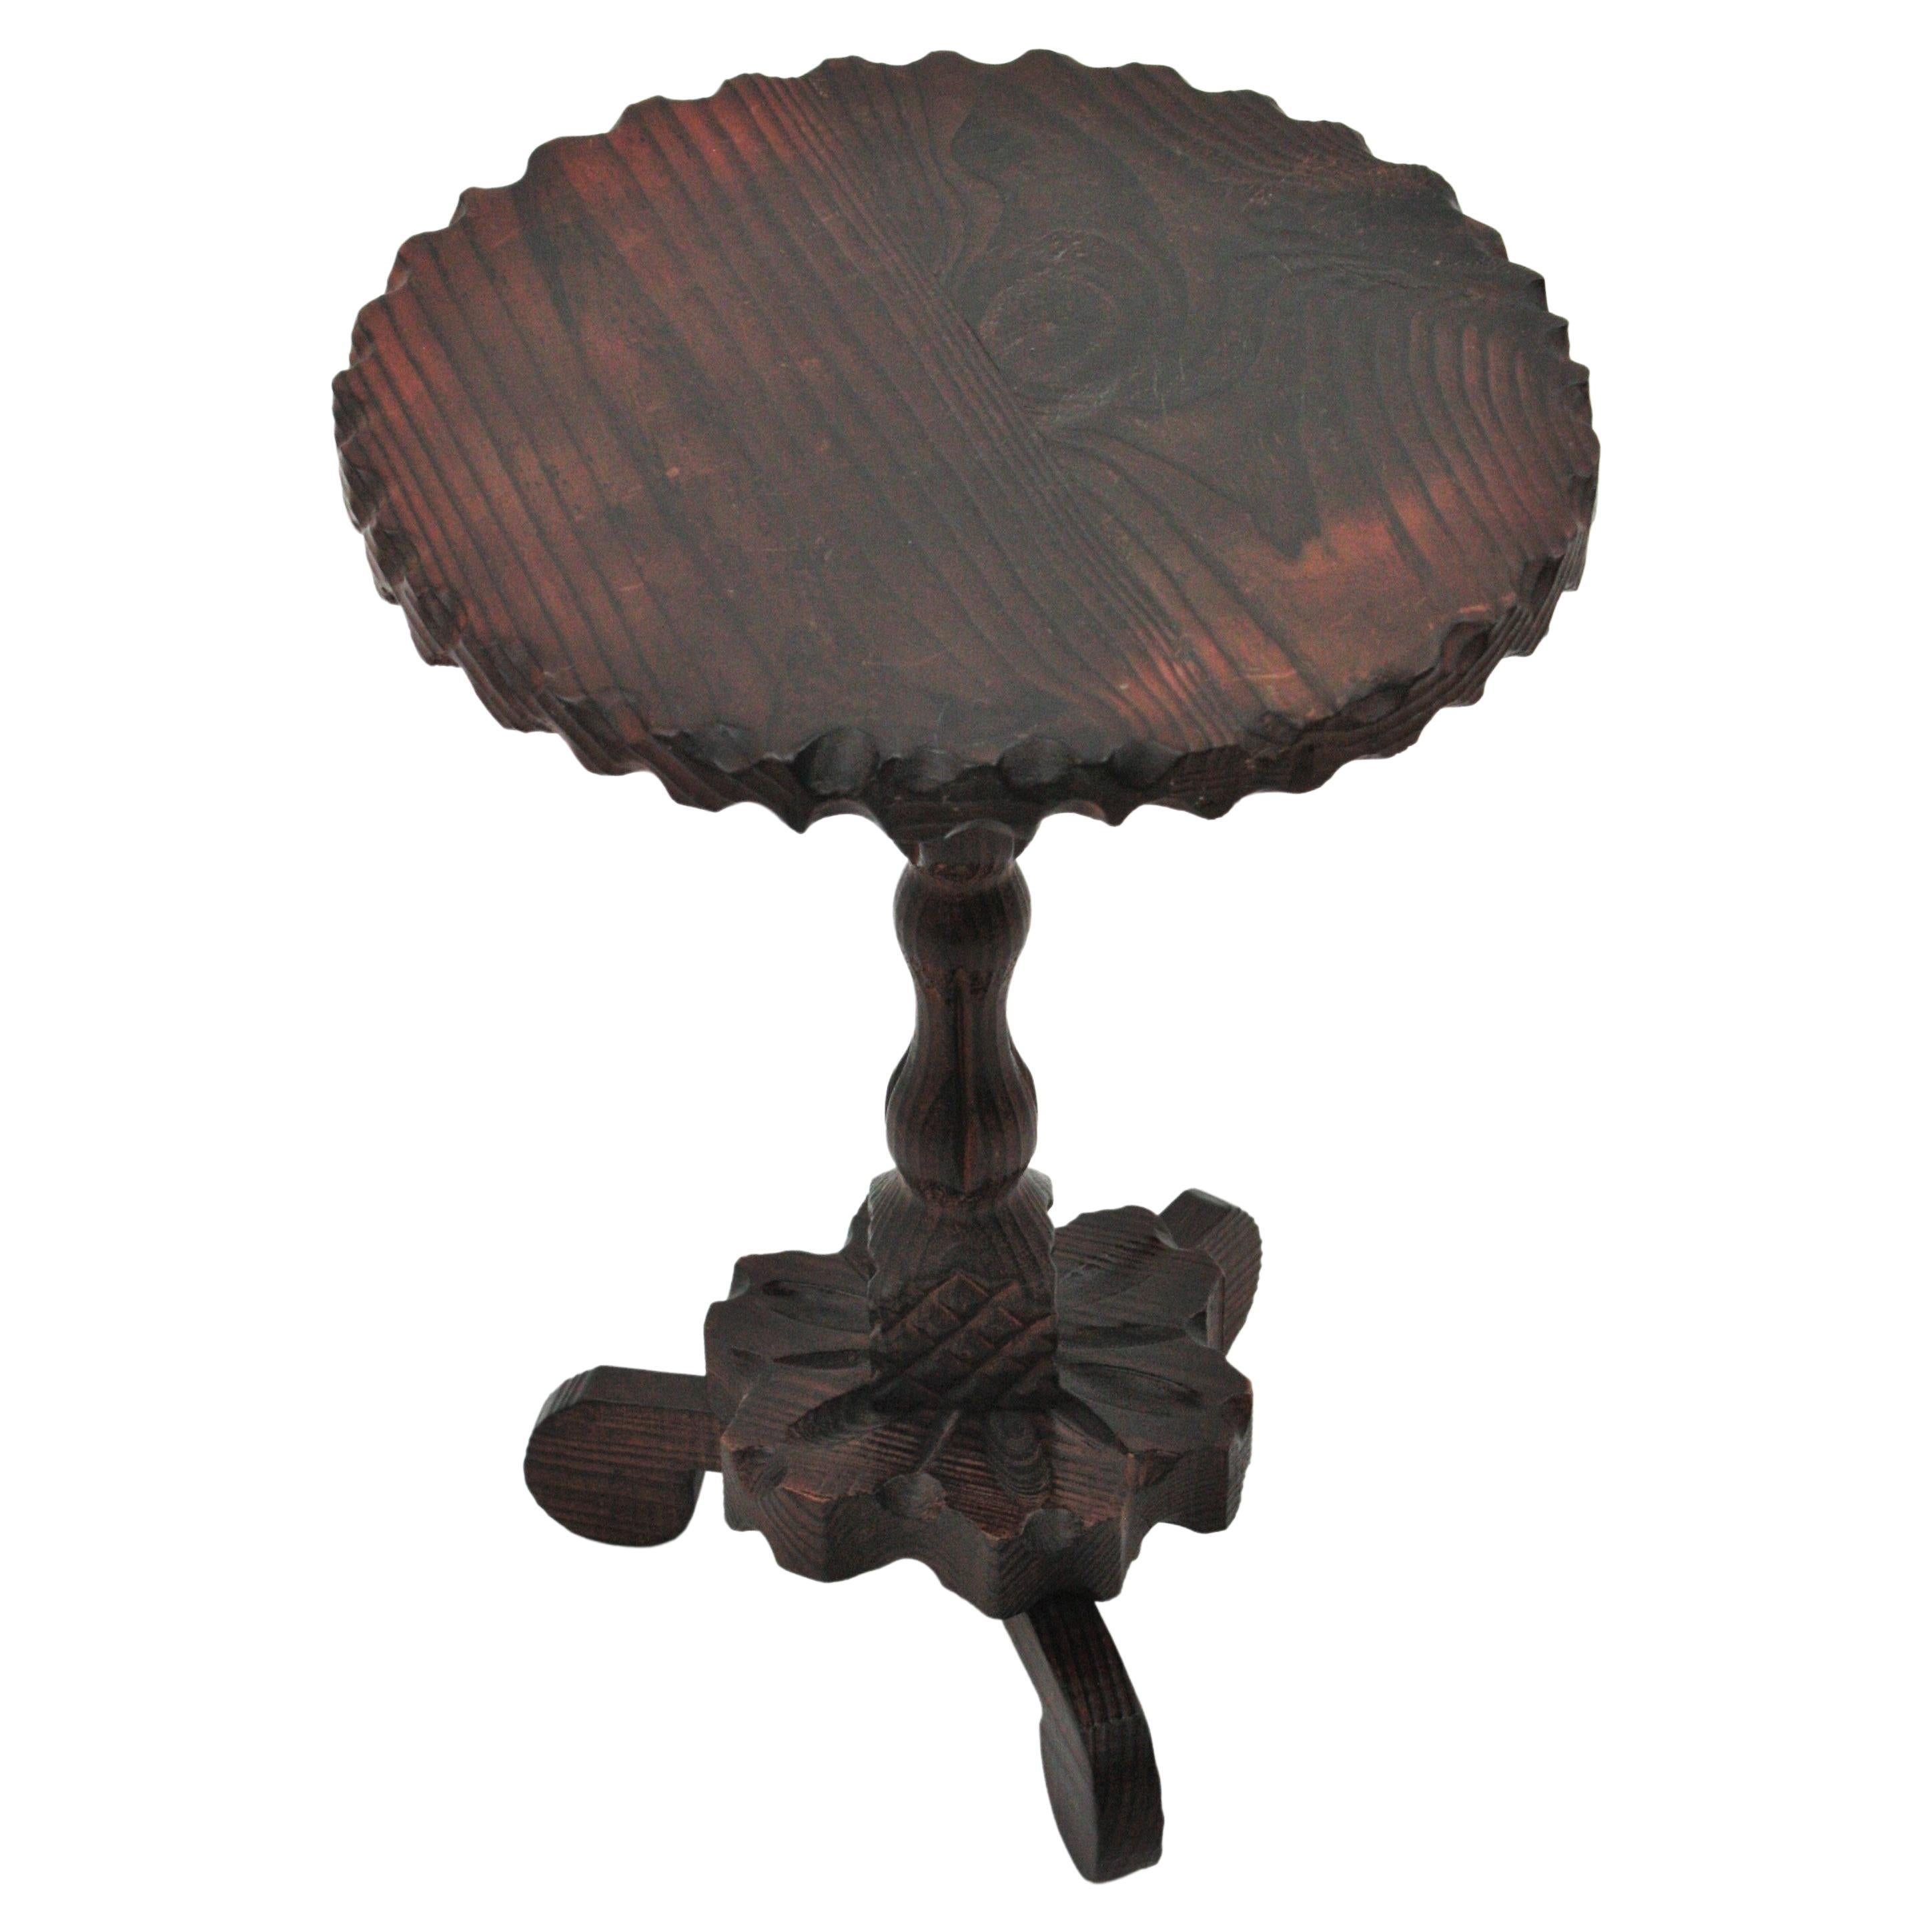 Handgeschnitzter Gueridon-Tisch oder Beistelltisch aus Kiefernholz auf einem Dreibeinfuß. Spanien, 1940er Jahre.
Die runde Tischplatte ist am Rand mit einem Wellenschliff versehen. Er steht auf einem gedrechselten Holzstiel auf einem blumenförmig